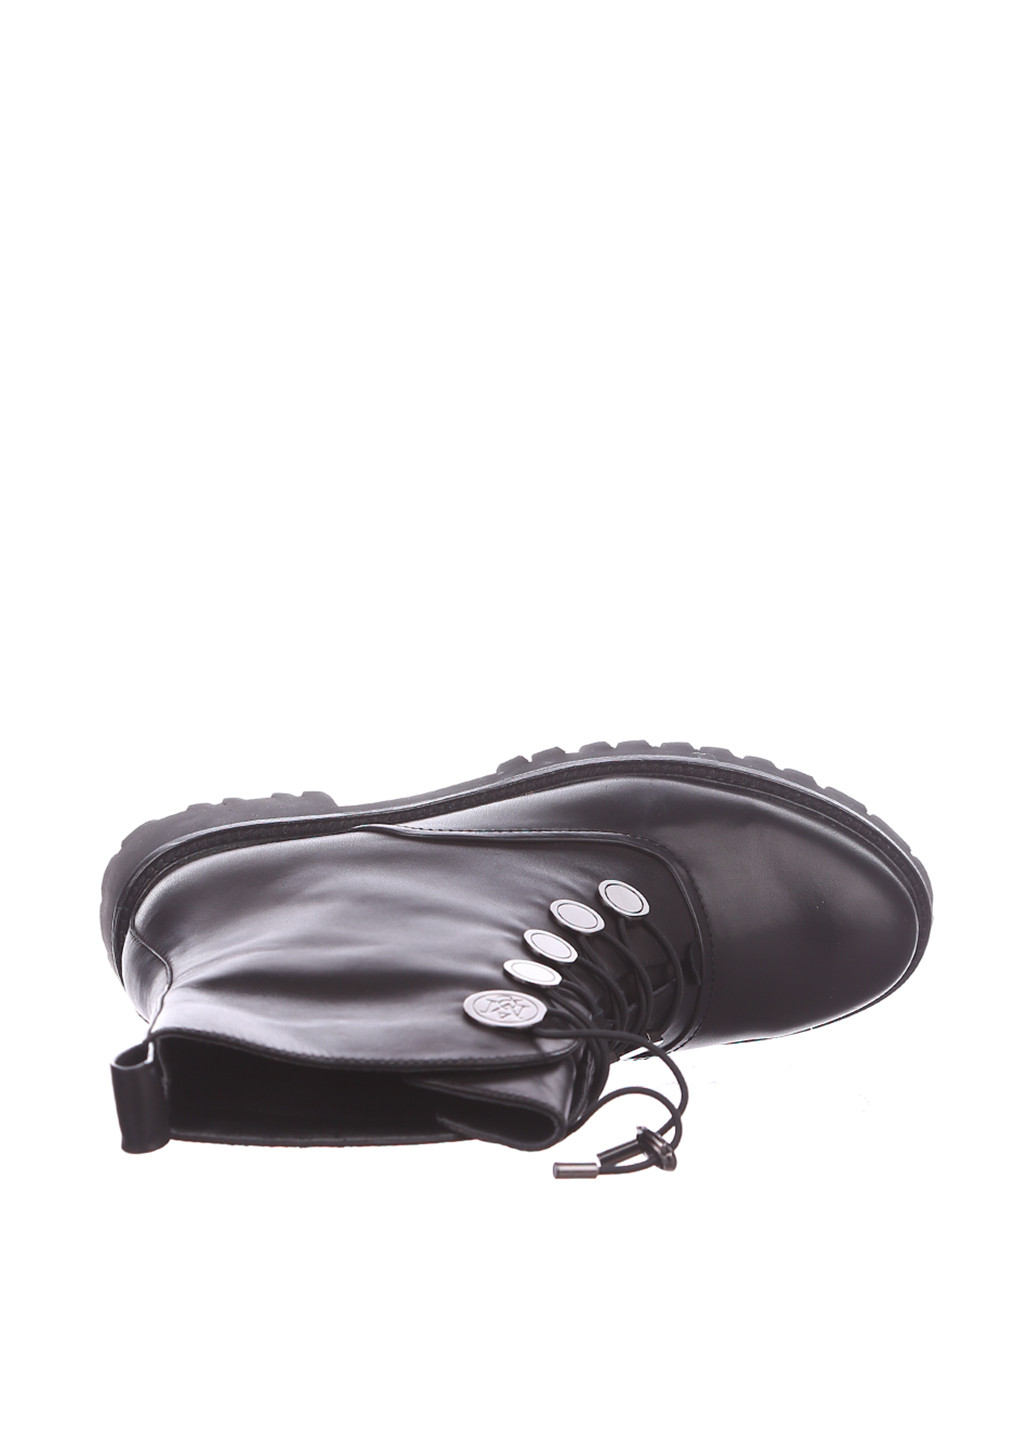 Осенние ботинки берцы Louis veronica с металлическими вставками